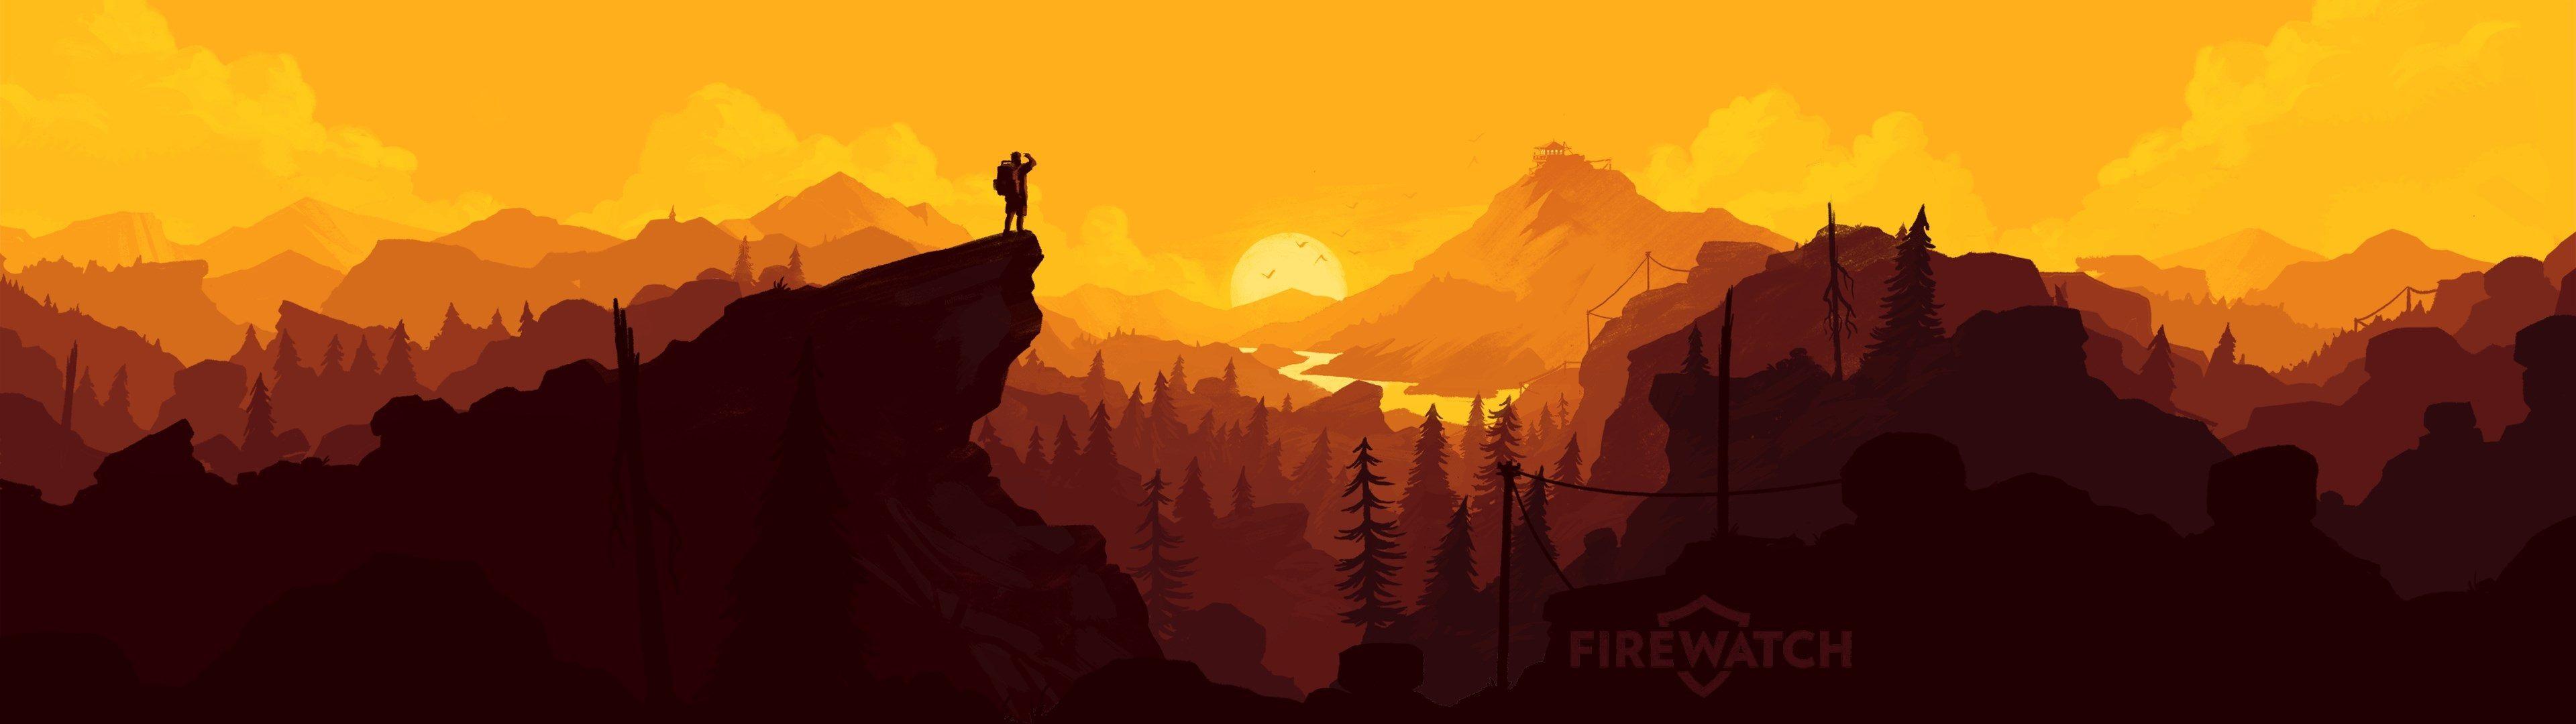 firewatch desktop wallpaper hd